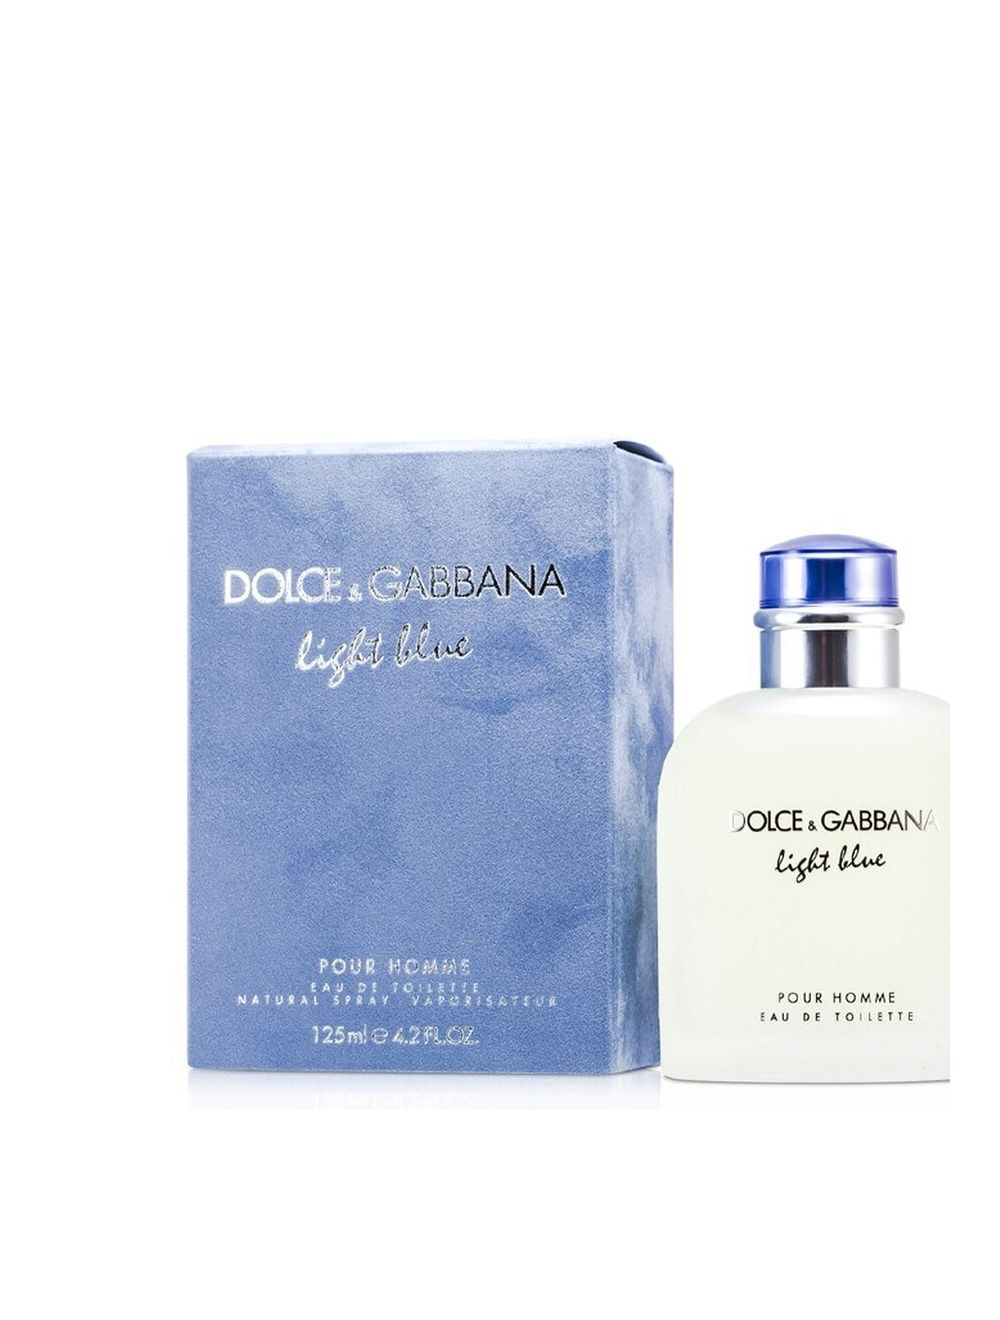 Dolce & Gabbana's Light Blue EDT For Men -100ml |TBN Ventures